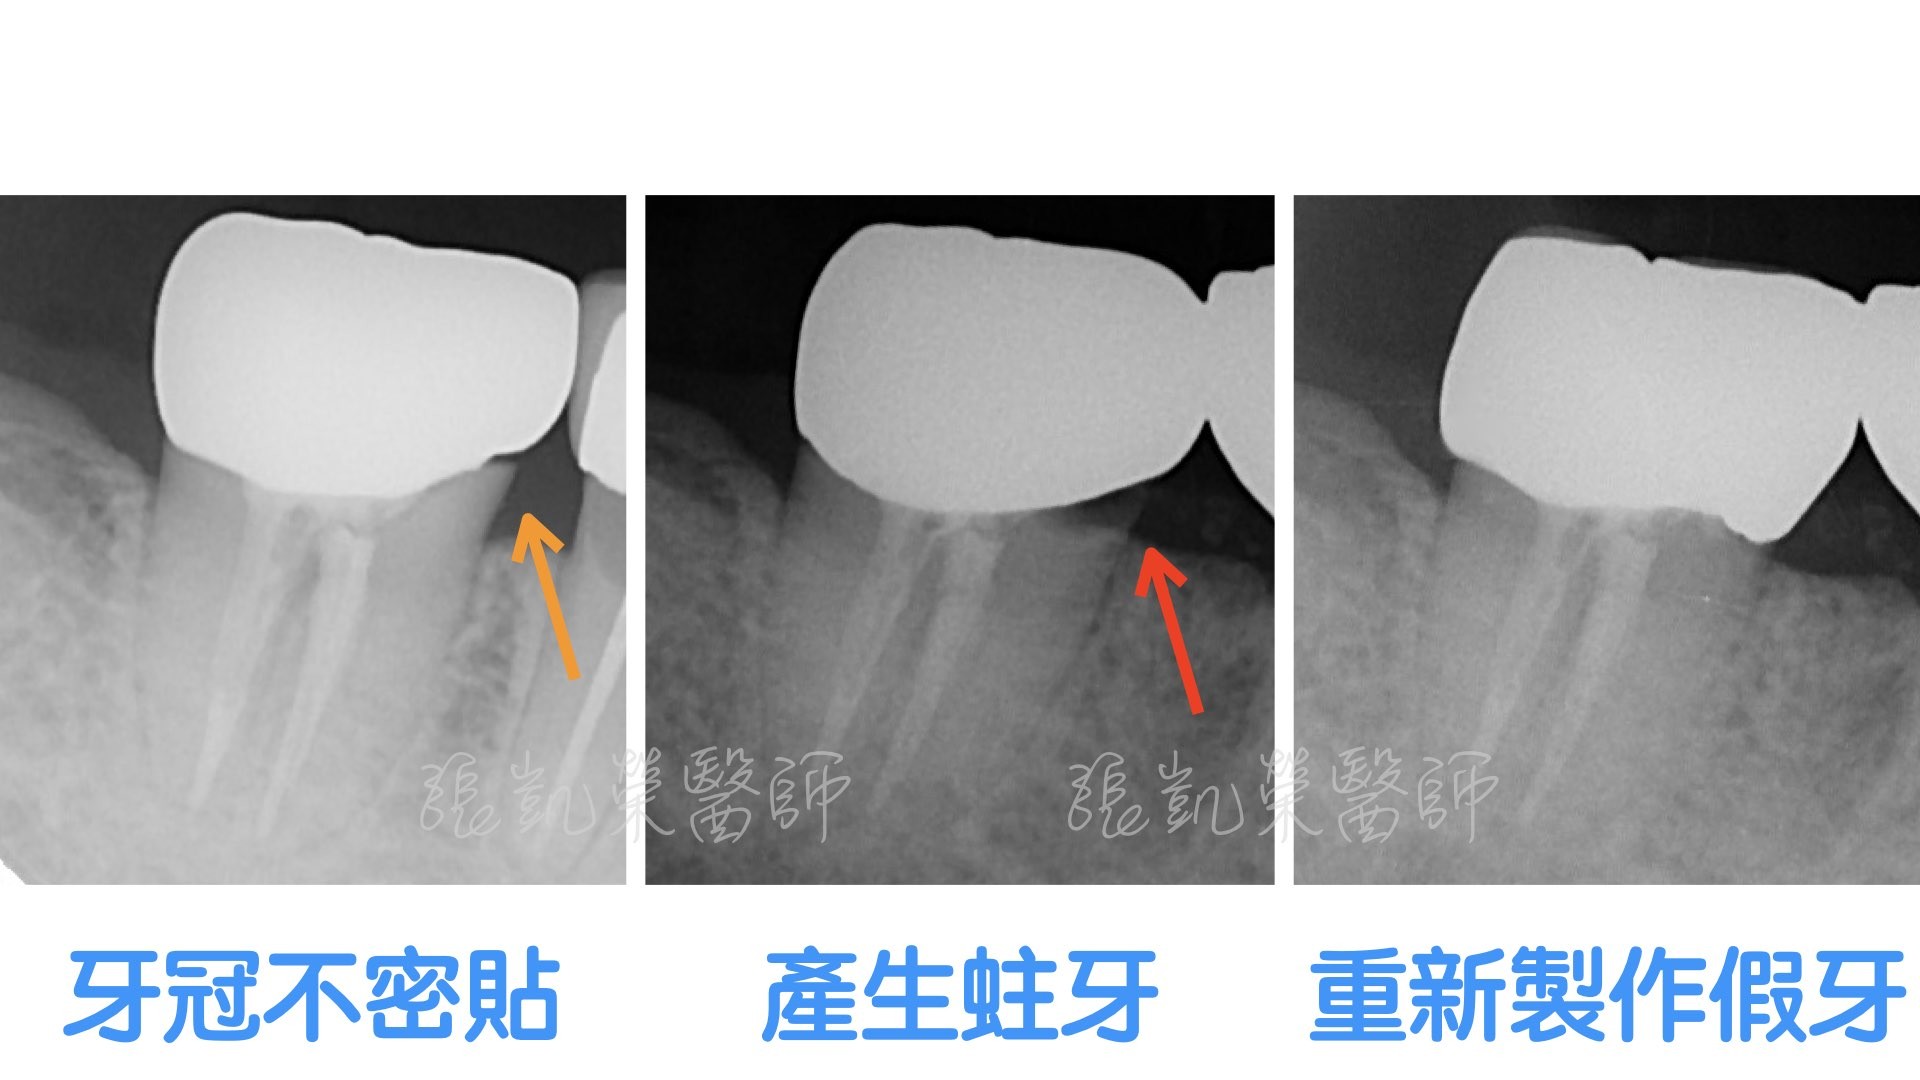 假牙不密貼該怎麼處理？part I :牙齒組織損傷仍可修復